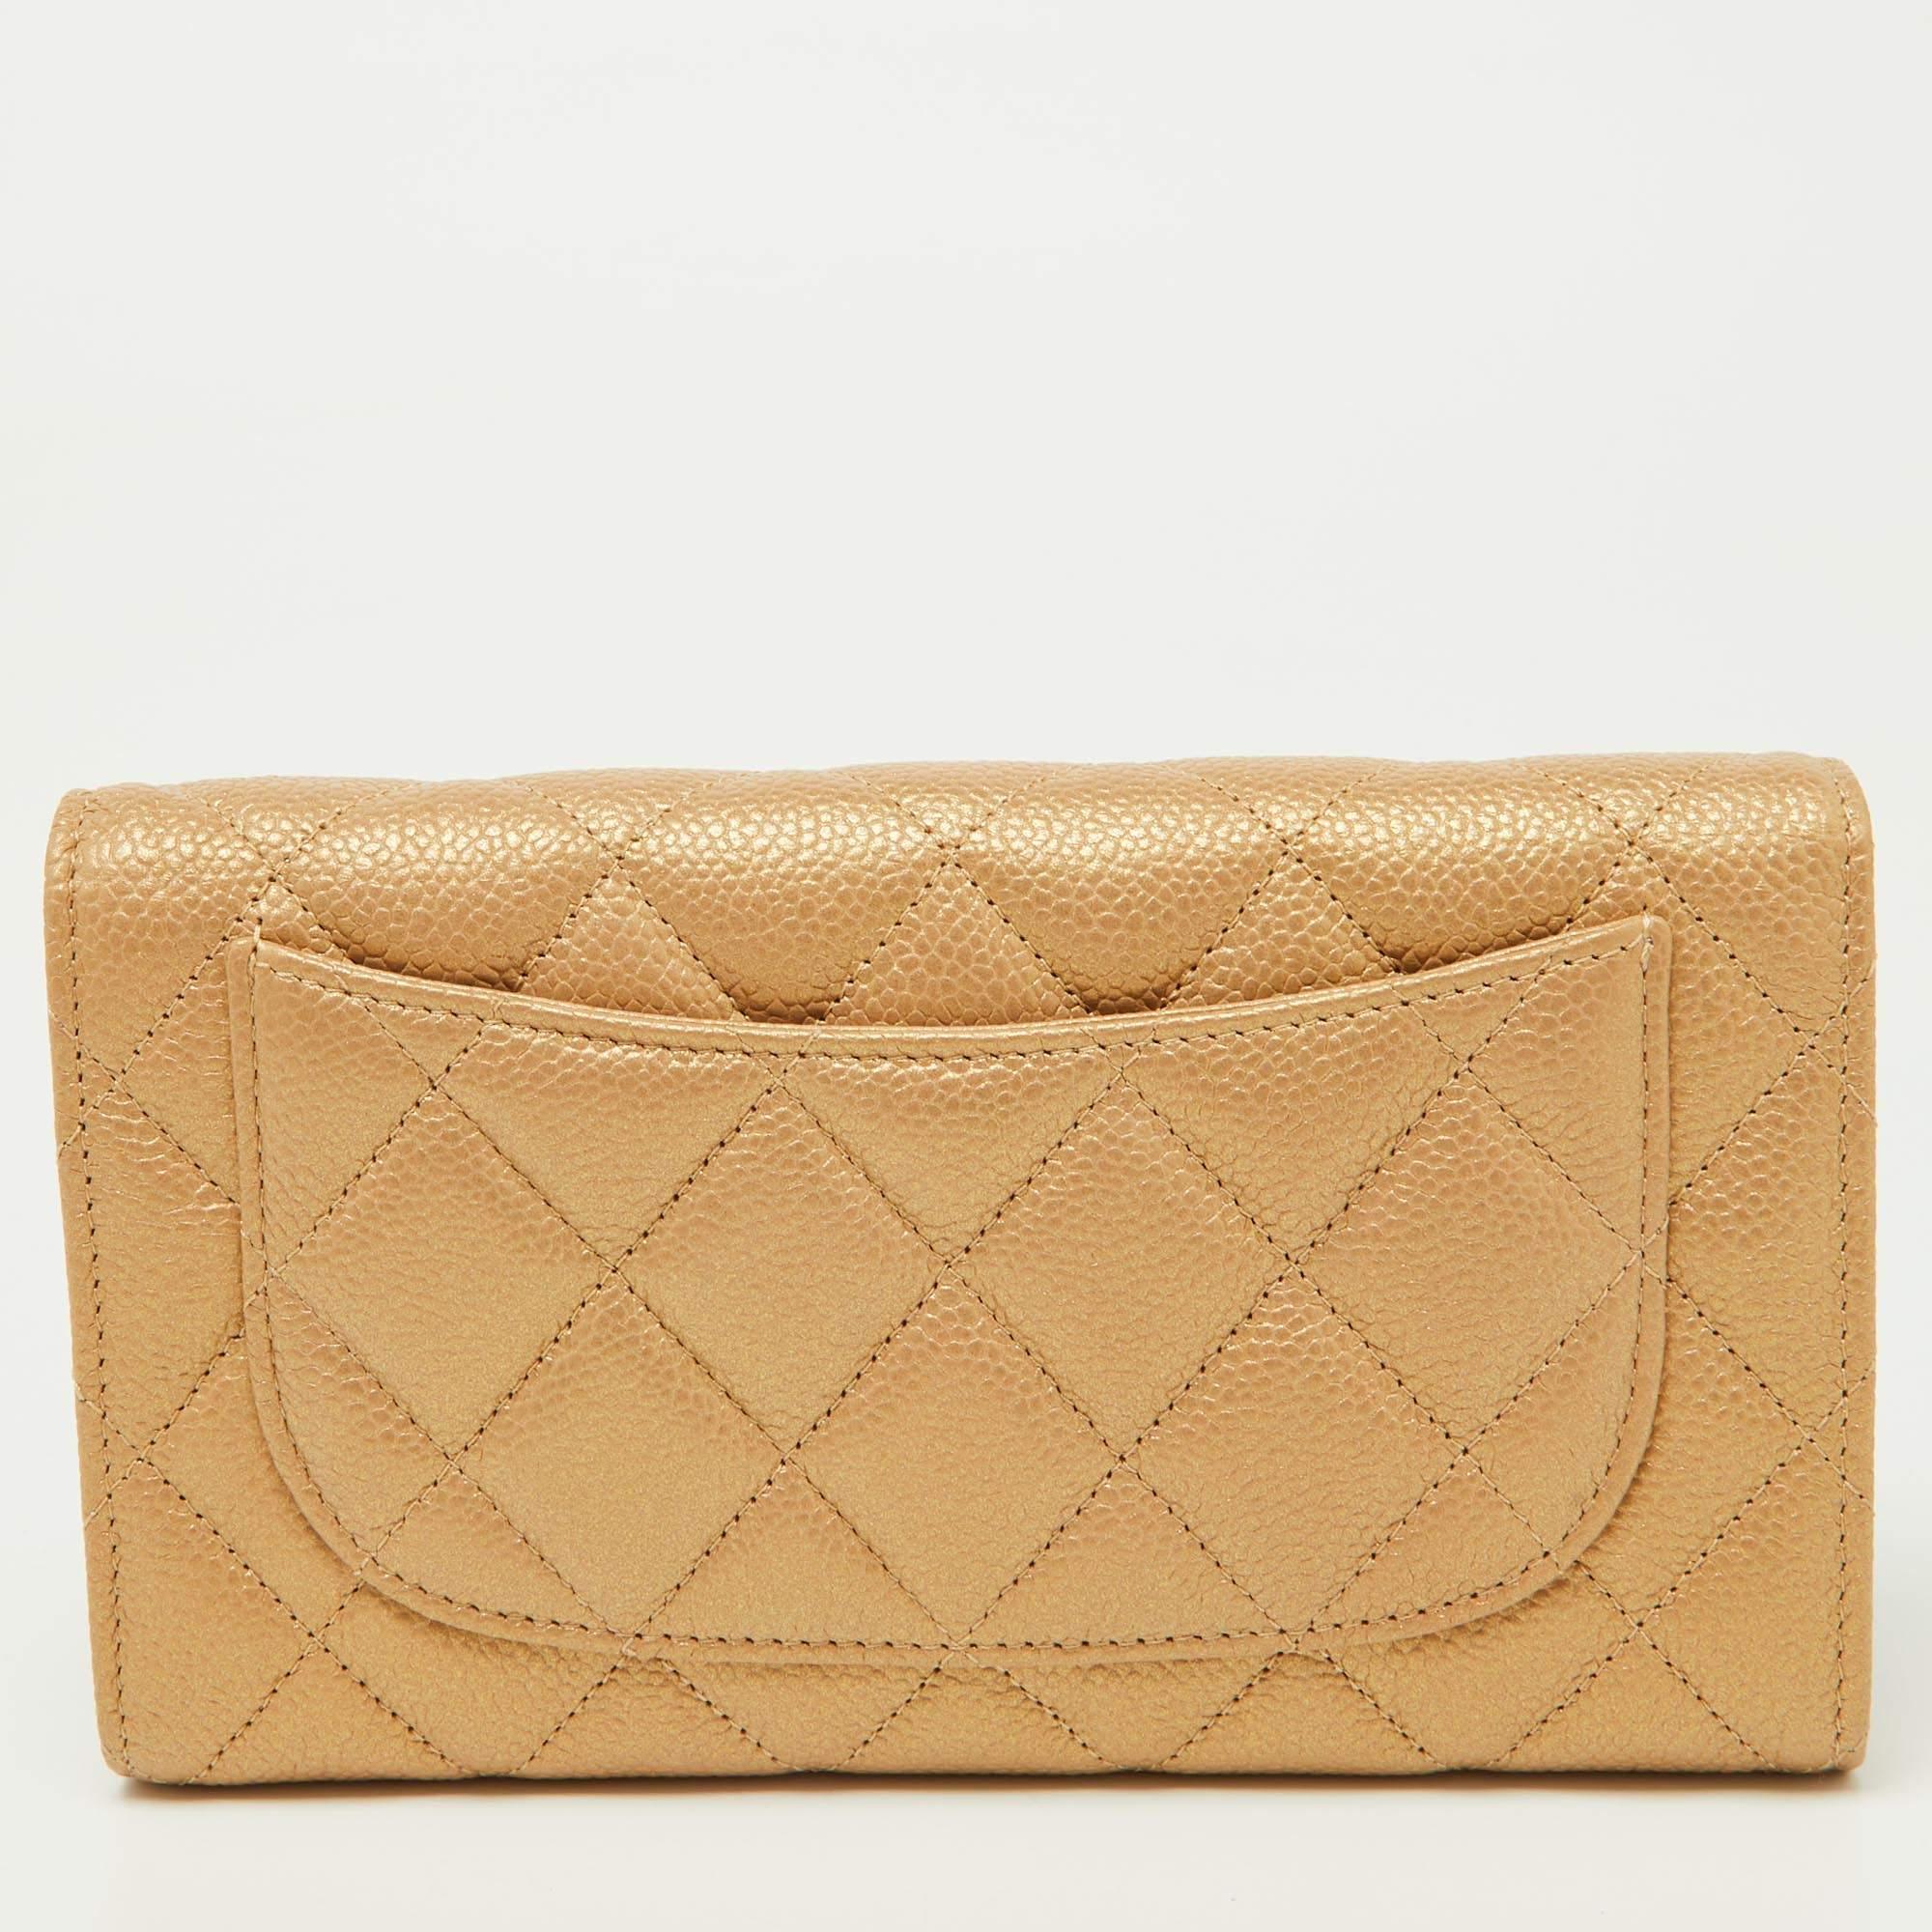 Chanel bietet Ihnen ein schickes Portemonnaie im Look einer klassischen Überschlagtasche. Sie ist aus Kaviarleder gefertigt und hat eine Klappe und eine aufgesetzte Tasche auf der Rückseite. Dieses Stück ist mit Steppnähten und einem CC-Druckknopf